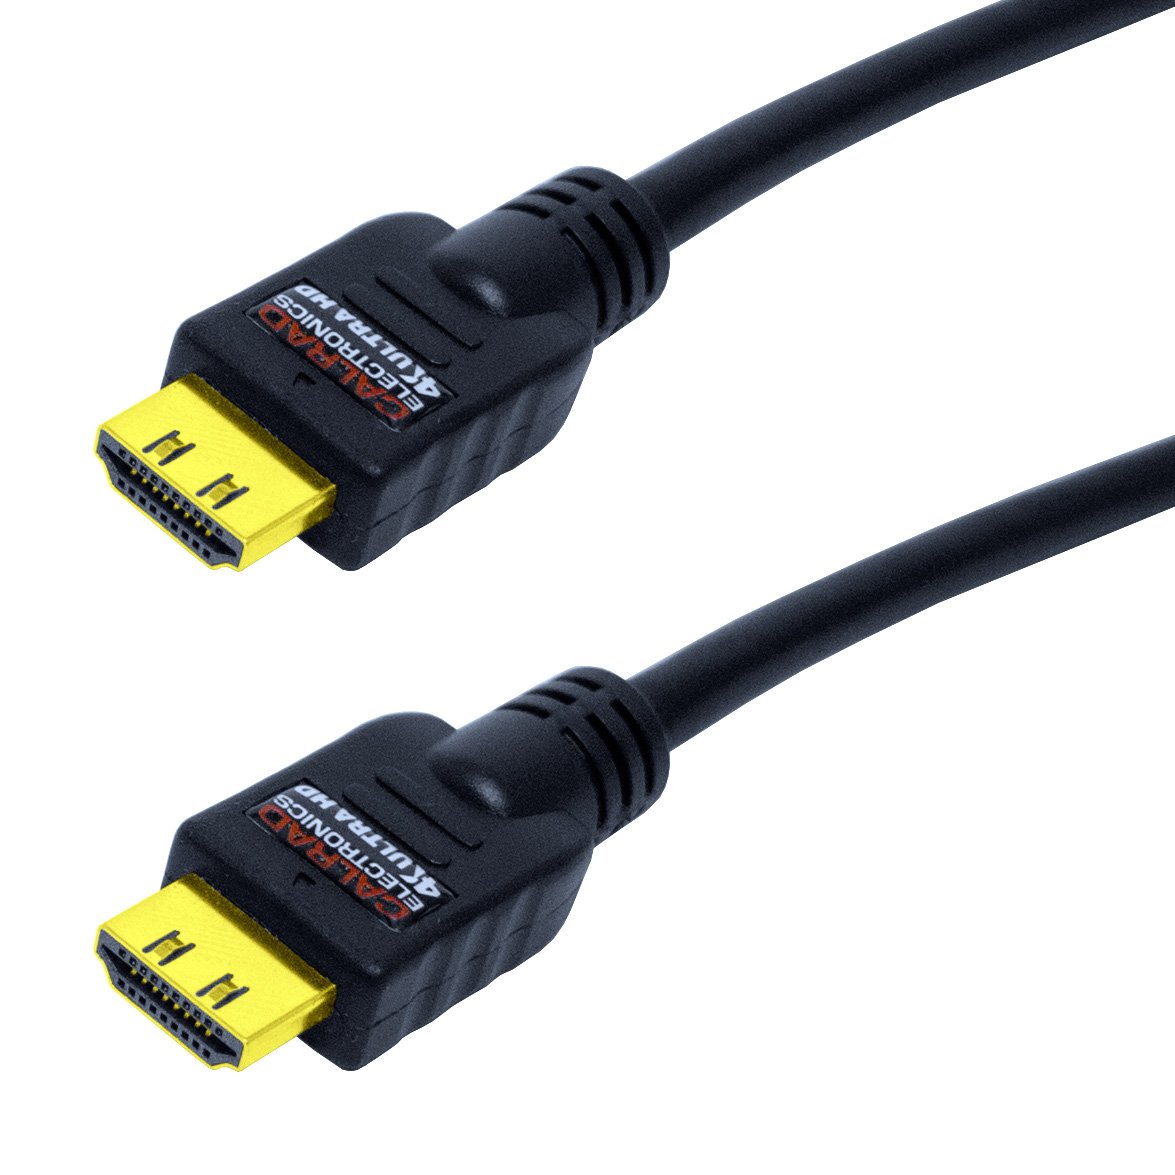 Calrad Electronics 55-668-6 HDMI Cable, Male, Male, 30 AWG Wire, Copper Sheath, Black Sheath, 6 ft L - 2